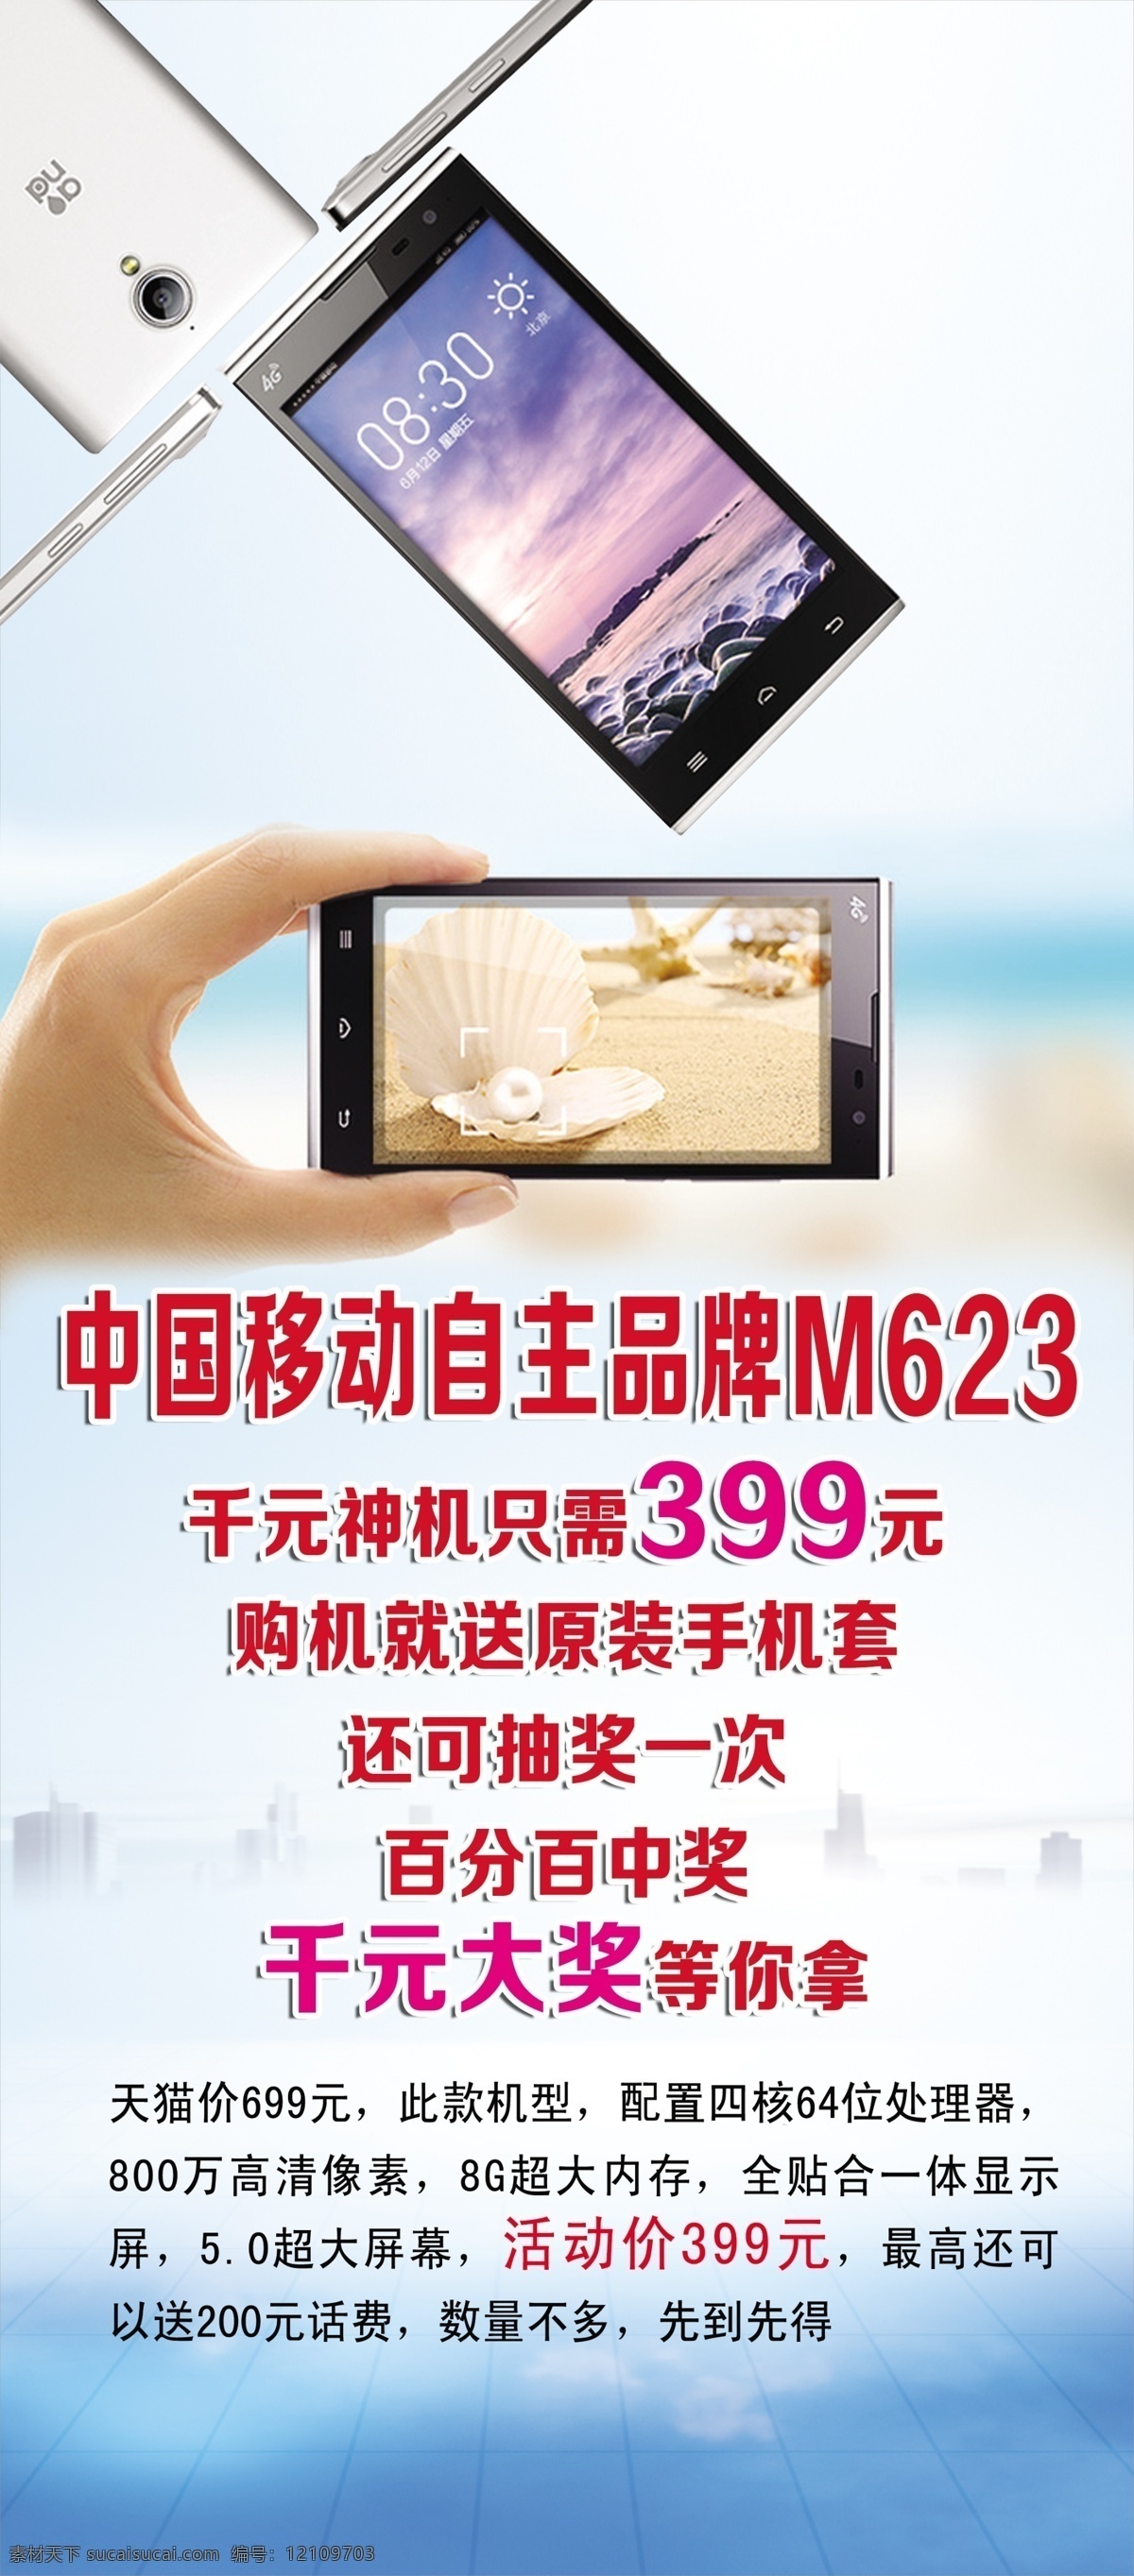 m623 手机 展架 中国移动 自主品牌 白色